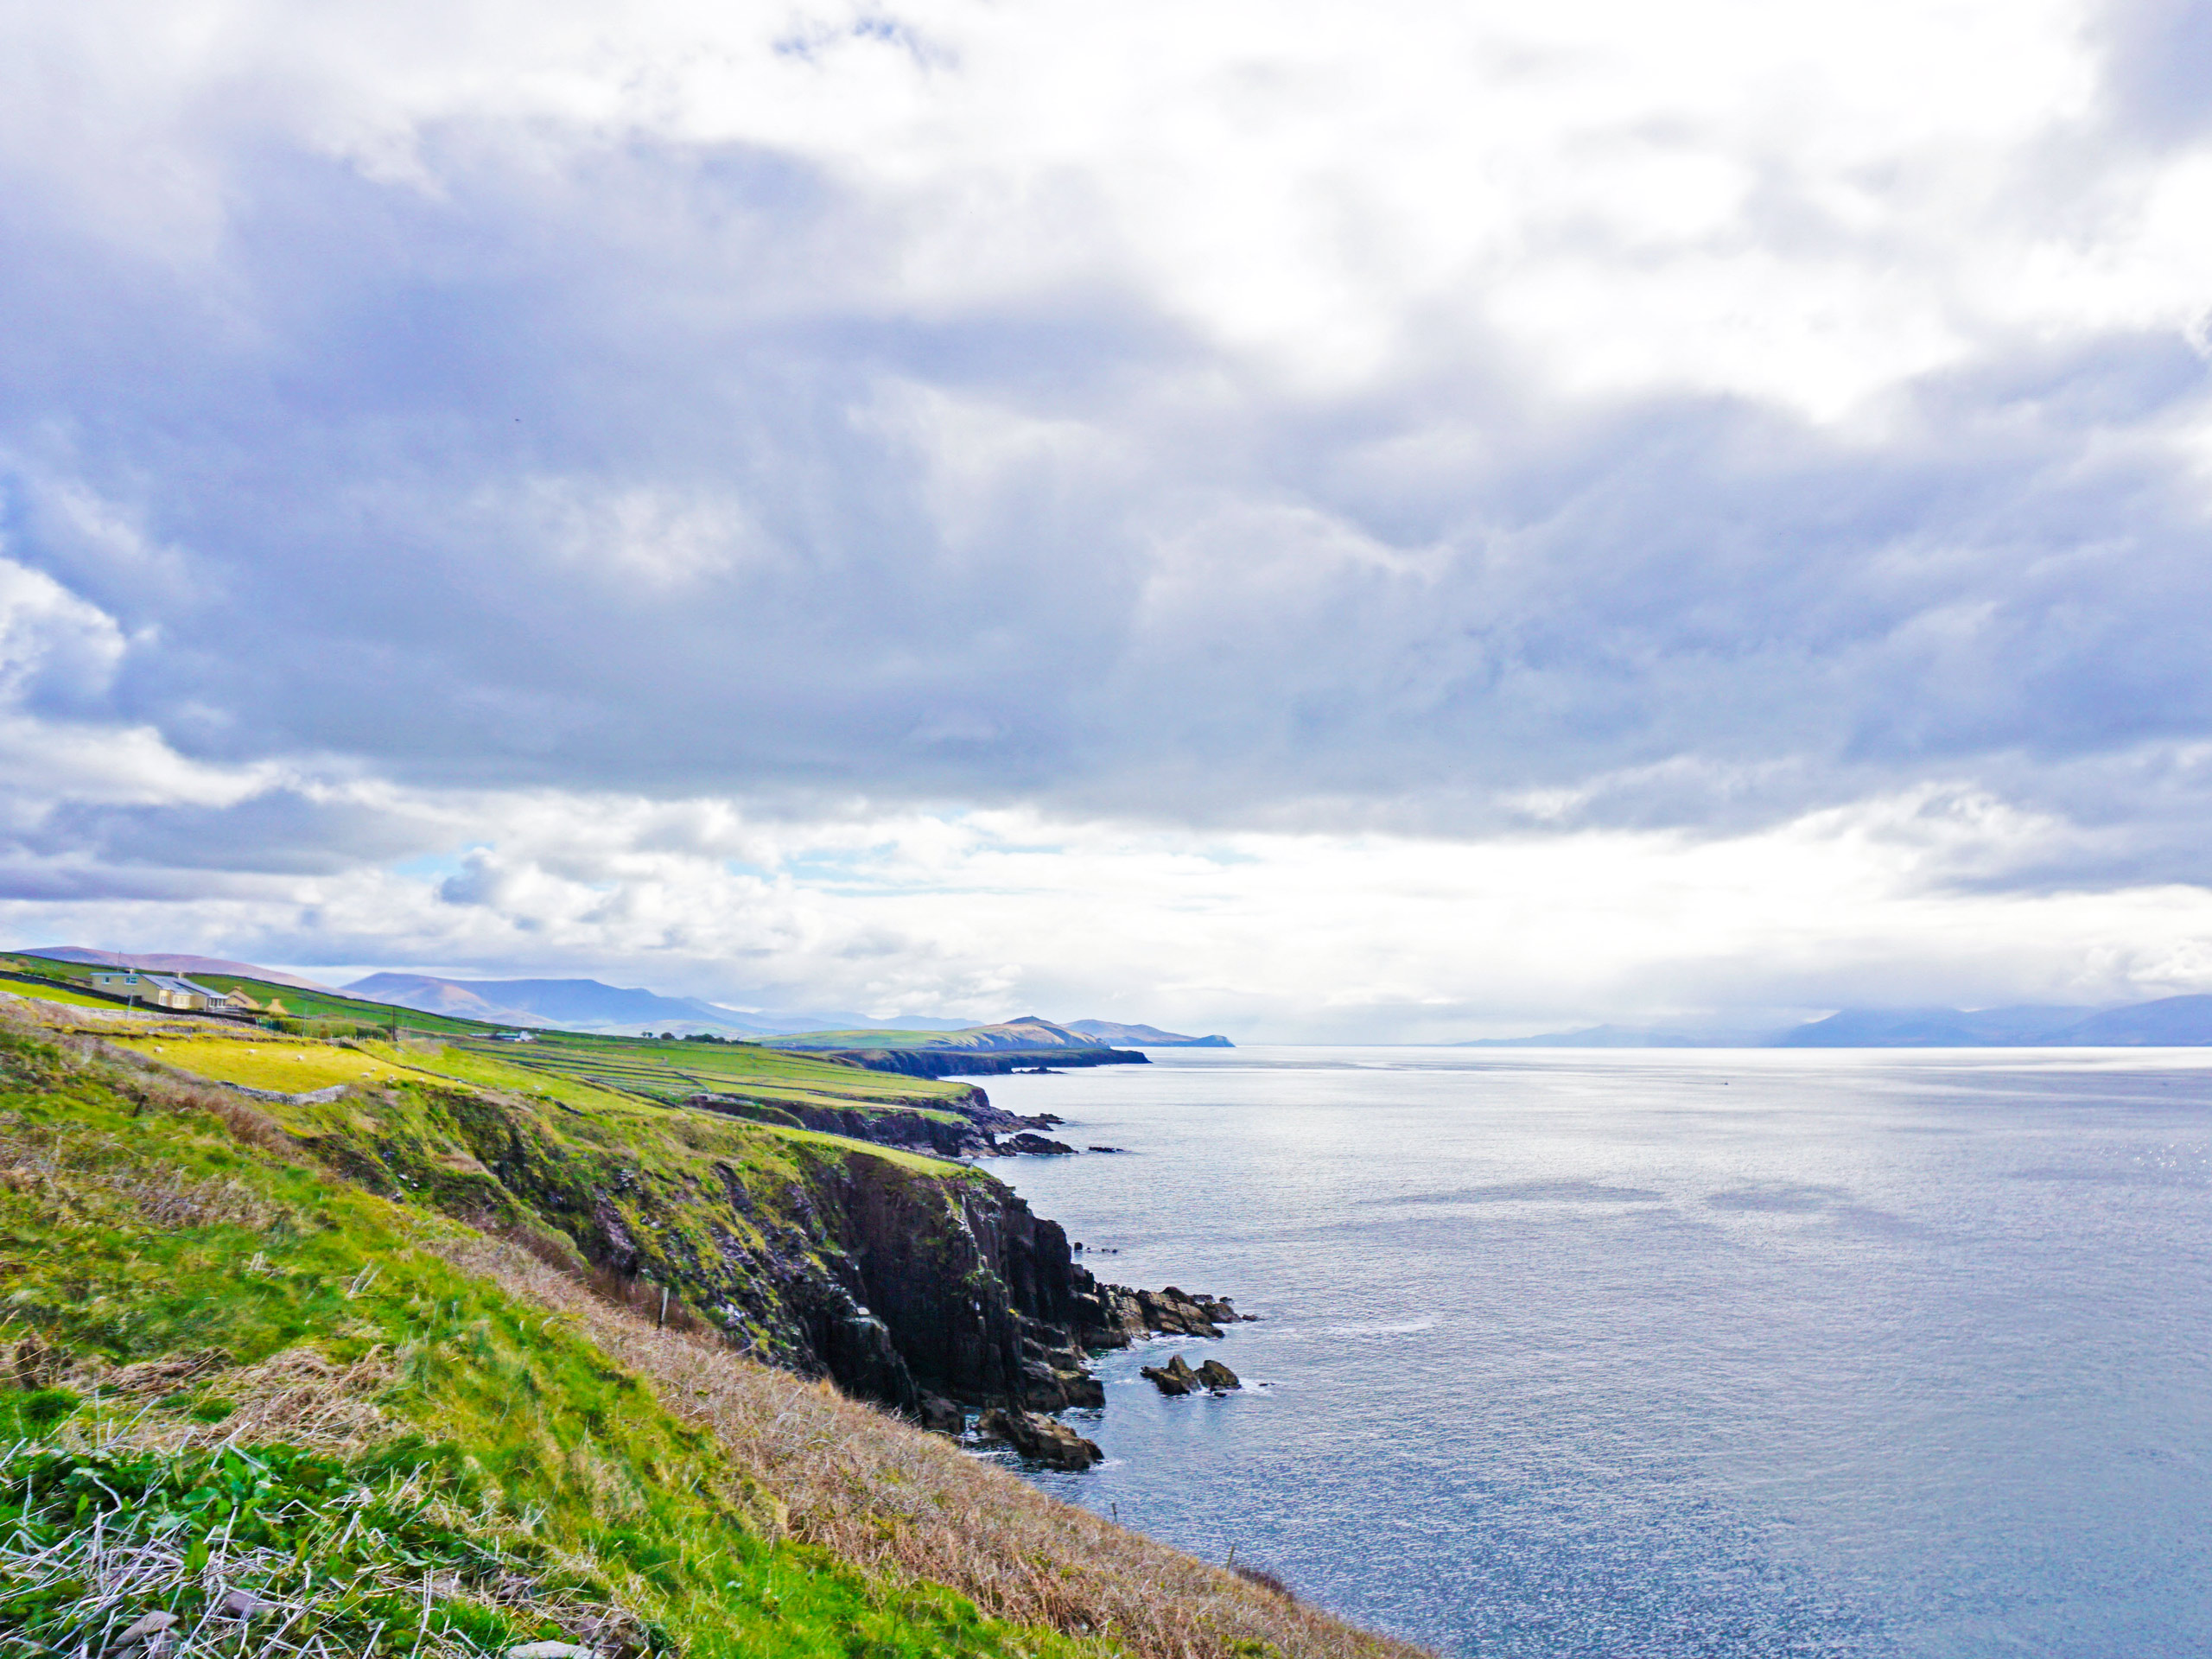 Ireland coastline landscape